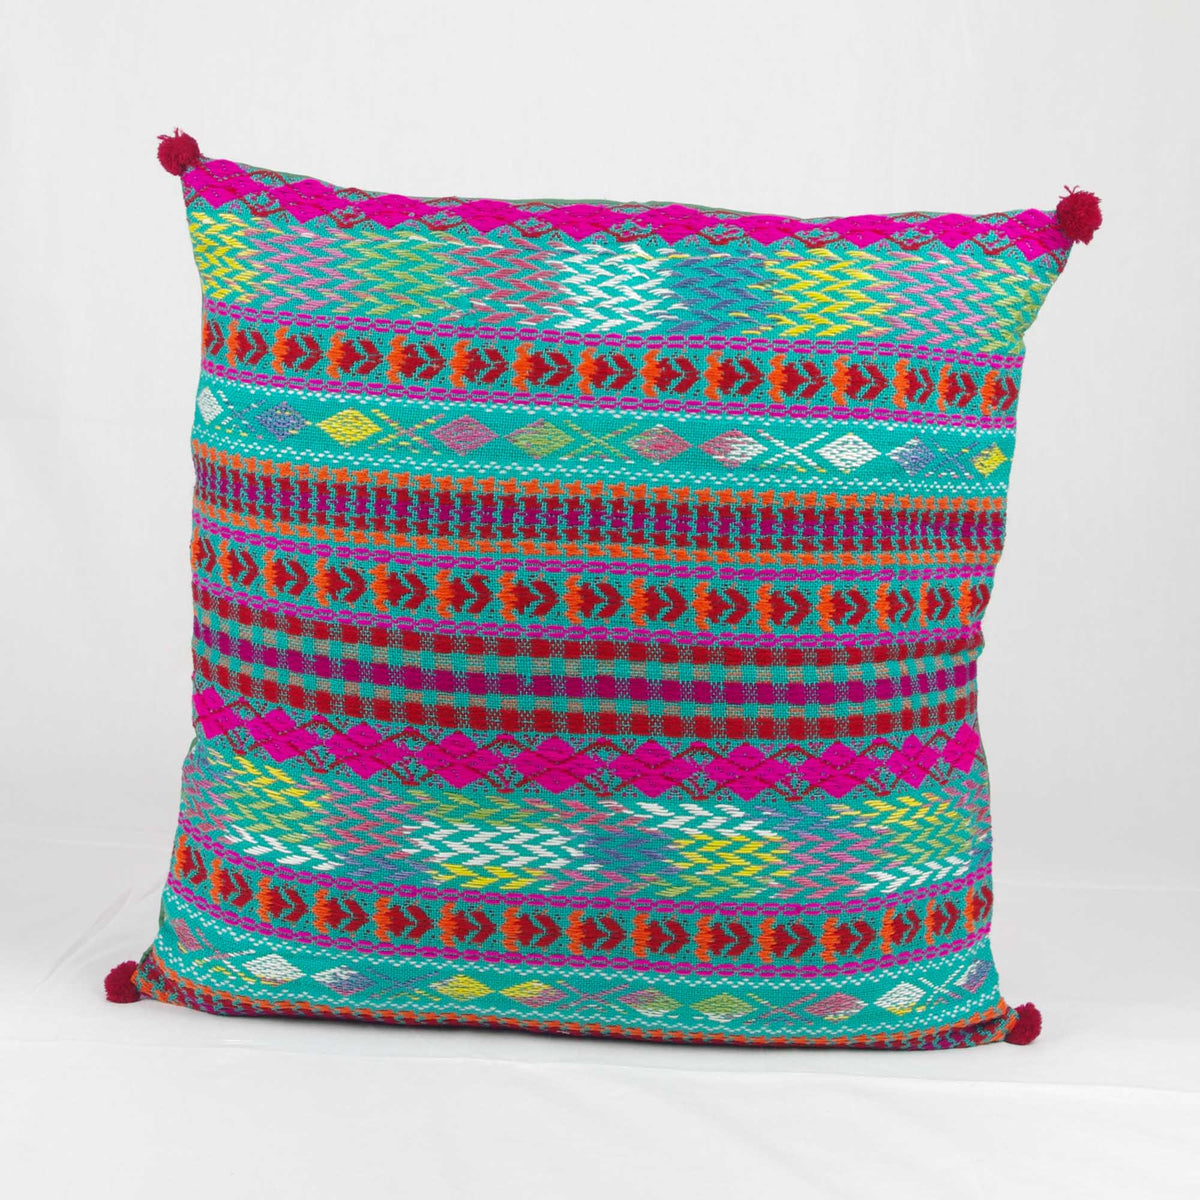 Bohemian Handloom Cotton Cushion Cover - Multicolour Green